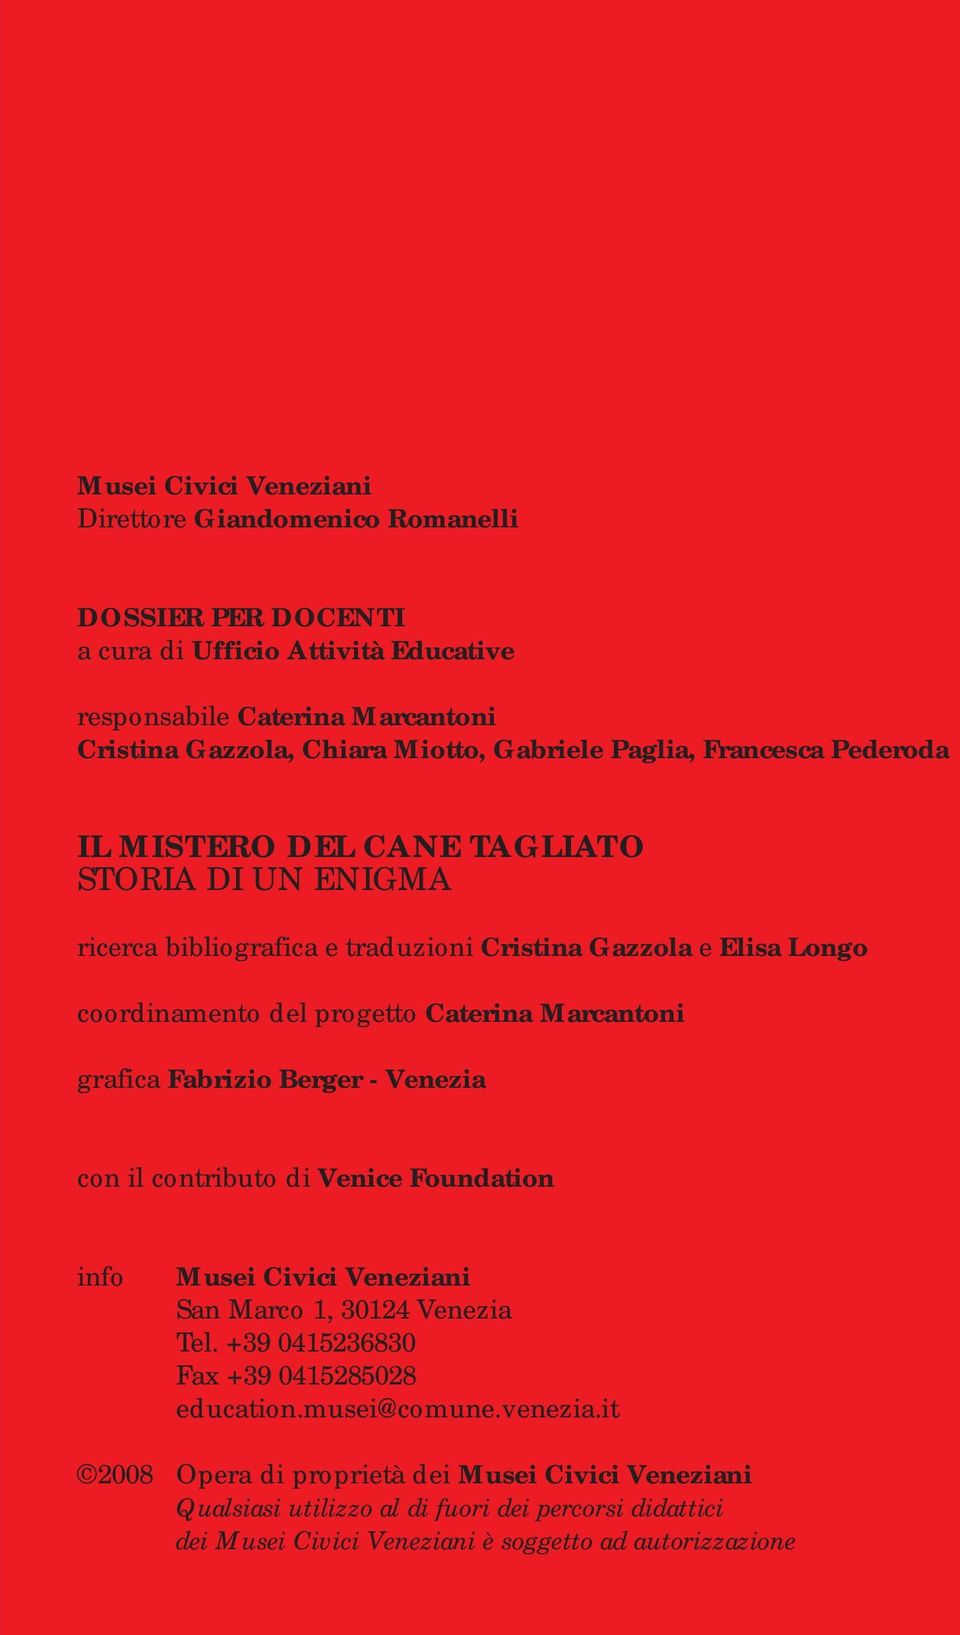 Caterina Marcantoni grafica Fabrizio Berger - Venezia con il contributo di Venice Foundation info Musei Civici Veneziani San Marco 1, 30124 Venezia Tel.